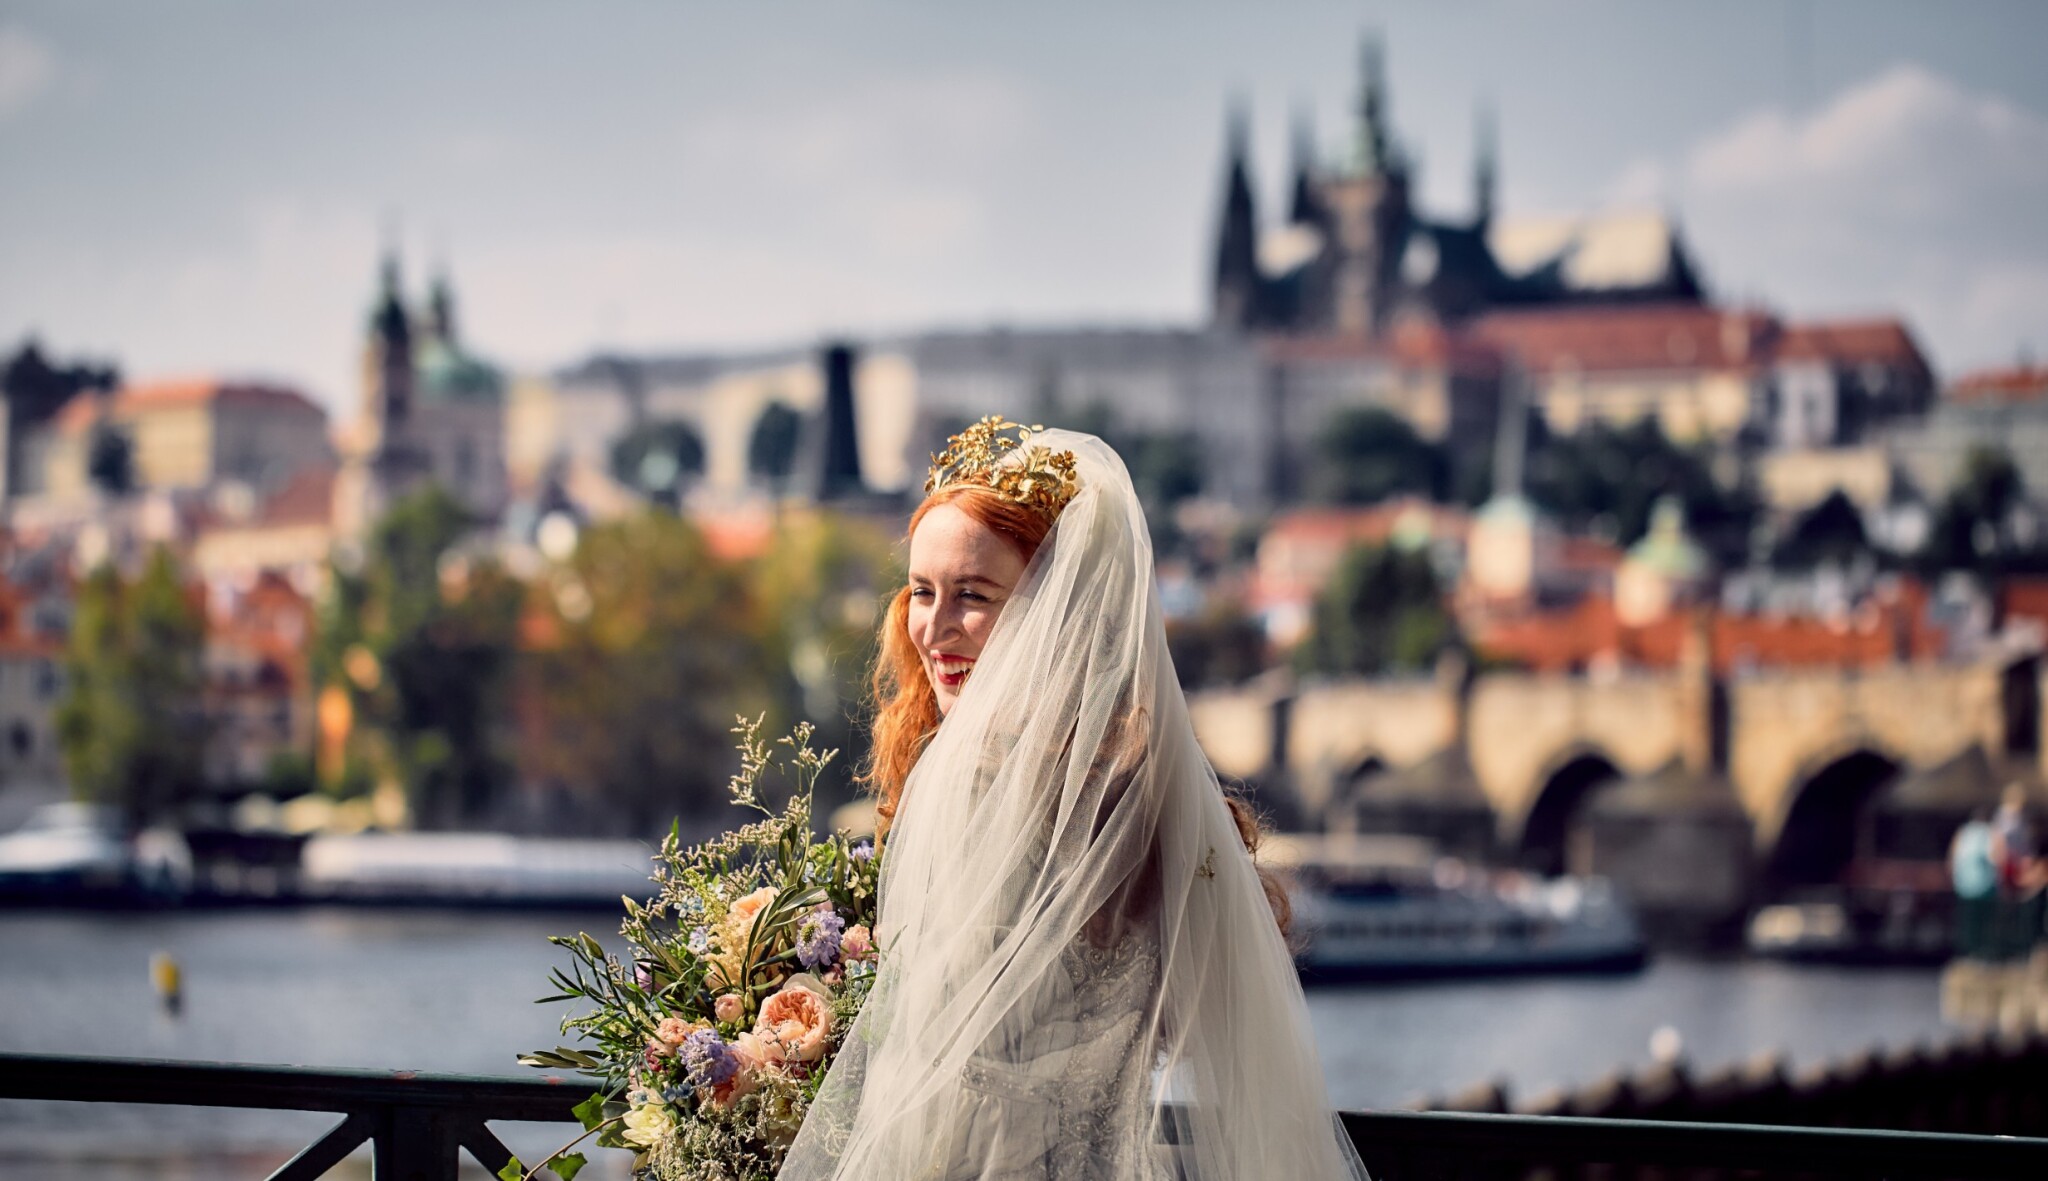 Cizinci chtějí svatbu v Praze.  Jezdí si pro bláznivá přání i symbolický obřad